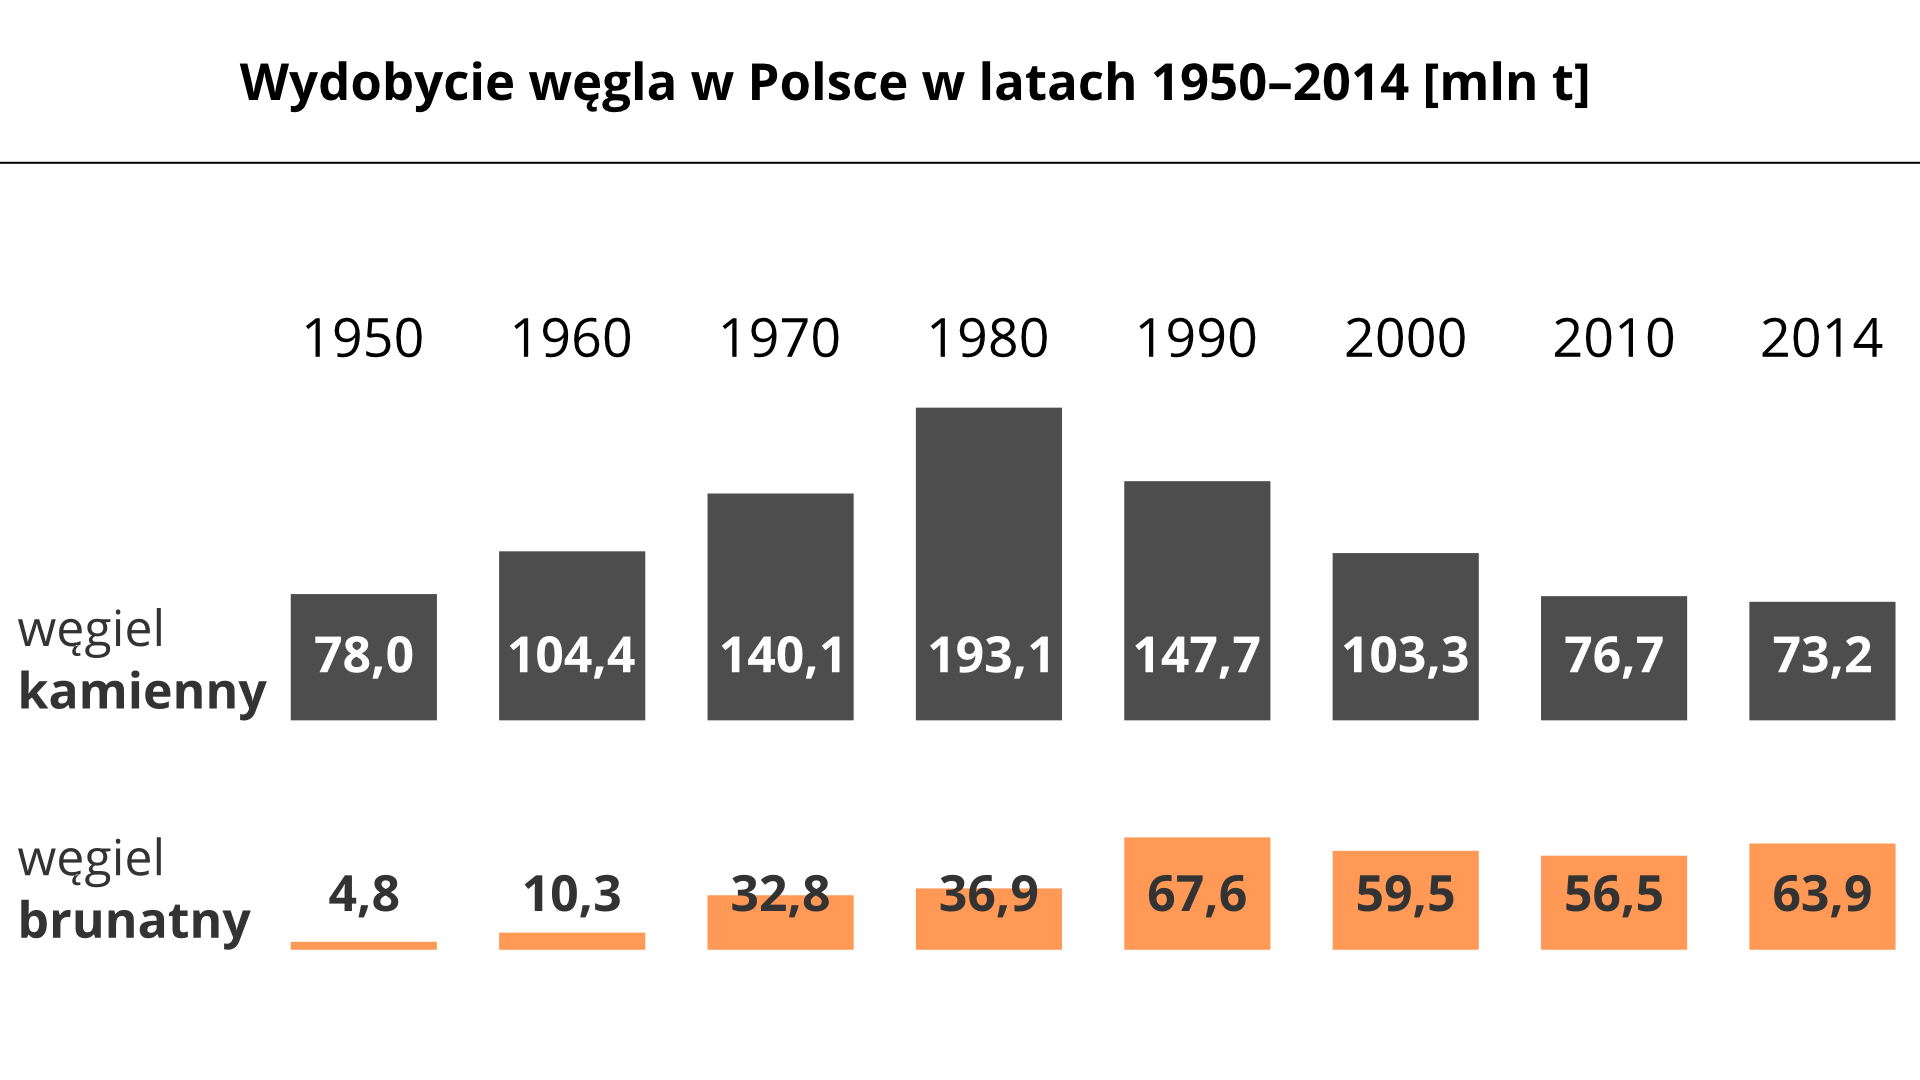 Na ilustracji wykresy słupkowe: wydobycie węgla w Polsce w latach 1950–2014 w milionach ton. W 1950 węgiel kamienny 78, węgiel brunatny 4,8. W 1960 węgiel kamienny 104, węgiel brunatny 10,3. W 1970 węgiel kamienny 140,1, węgiel brunatny 32,8. W 1980 węgiel kamienny 193,1, węgiel brunatny 36,9. W 1990 węgiel kamienny 147,7, węgiel brunatny 67,6. W 2000 węgiel kamienny 103,3, węgiel brunatny 59,5. W 2010 węgiel kamienny 76,7, węgiel brunatny 56,6. W 2014 węgiel kamienny 73,2, węgiel brunatny 63,9.